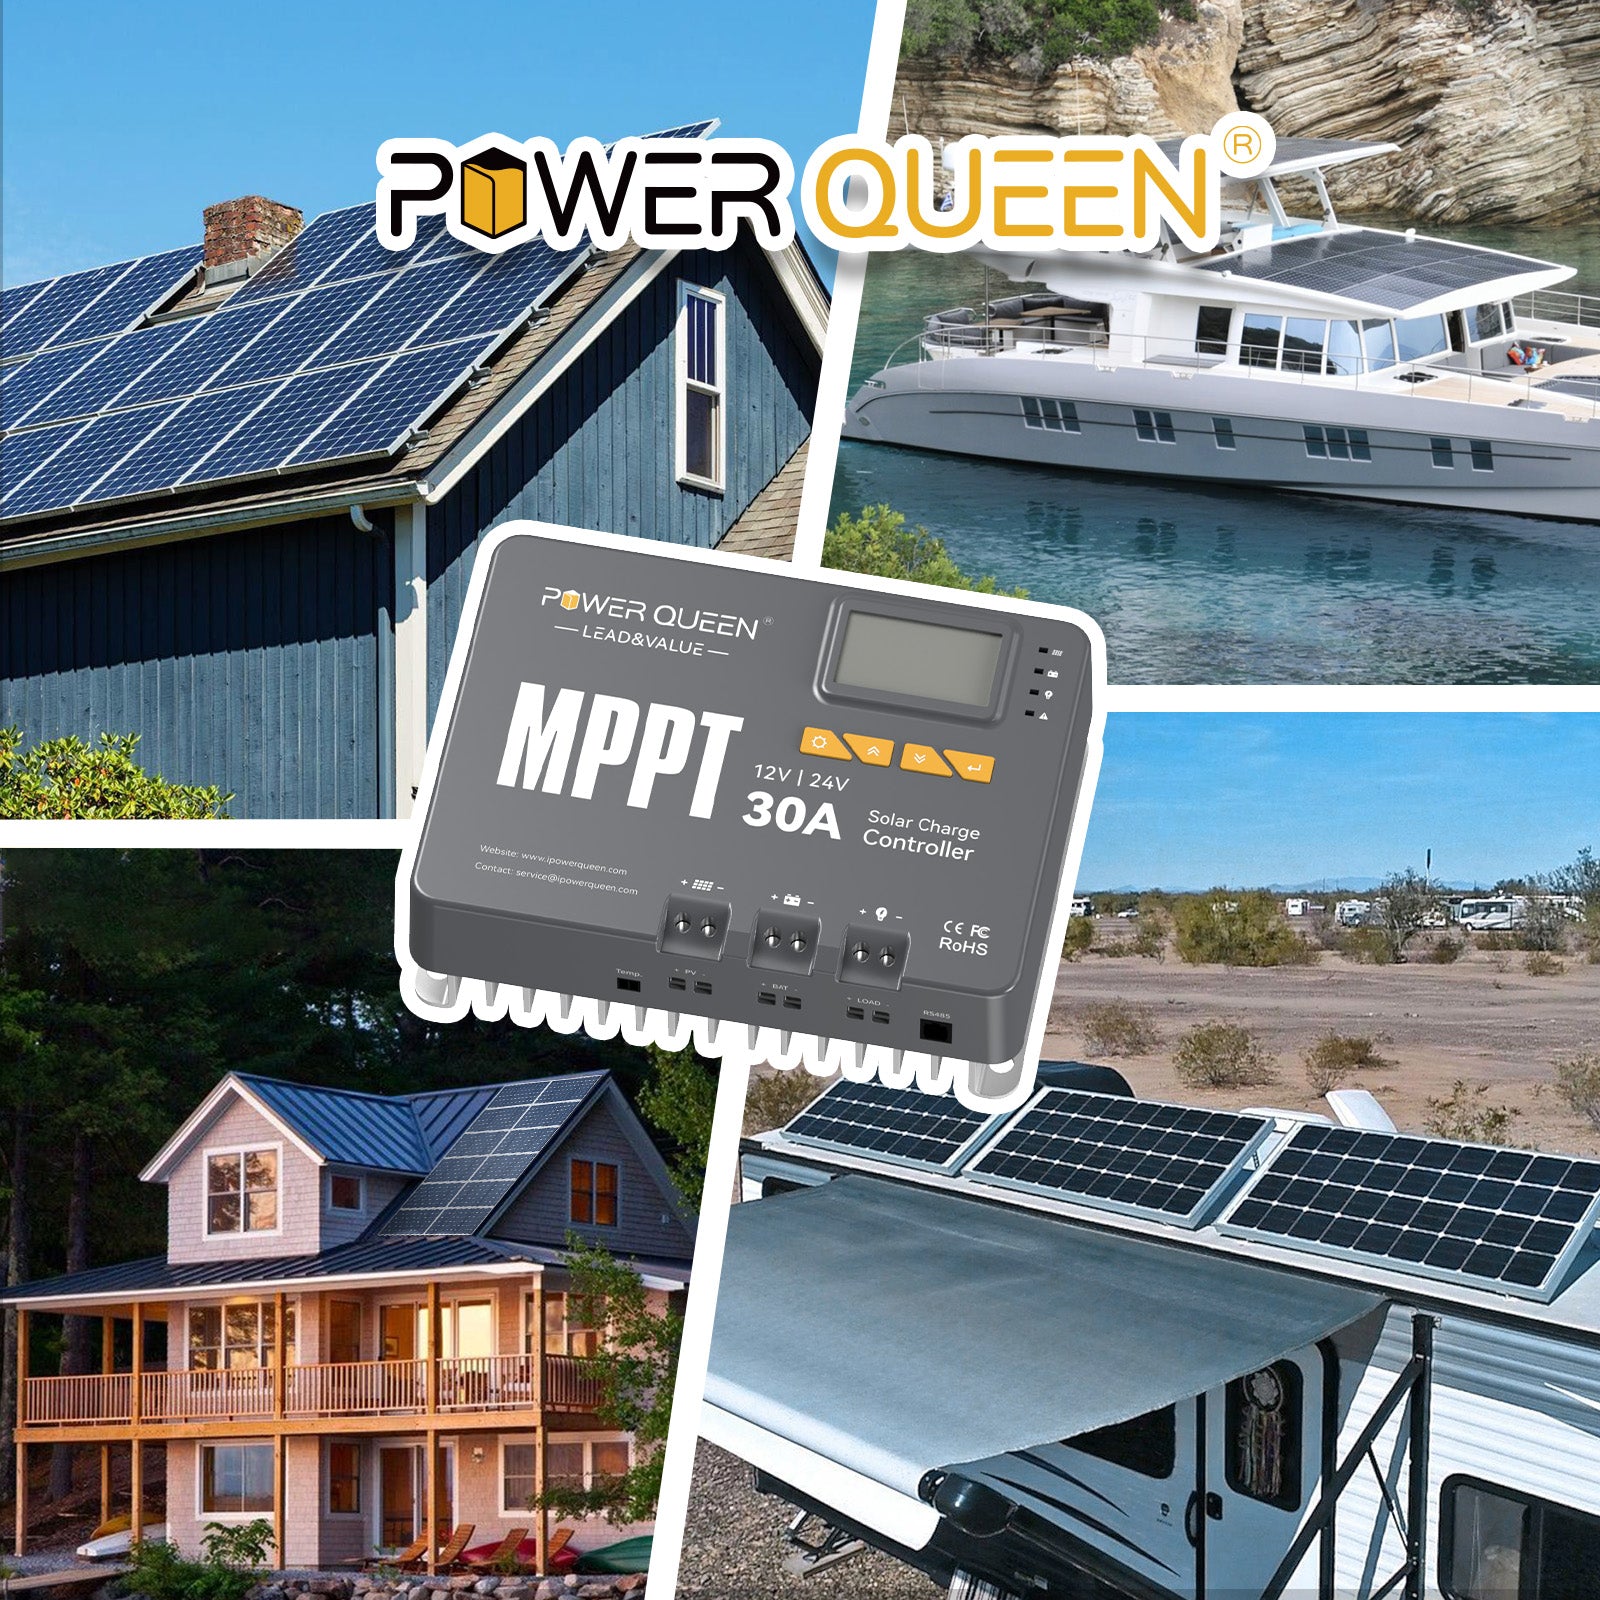 【TVA 0%】 Contrôleur de charge solaire Power Queen MPPT 12/24V 30A avec module Bluetooth